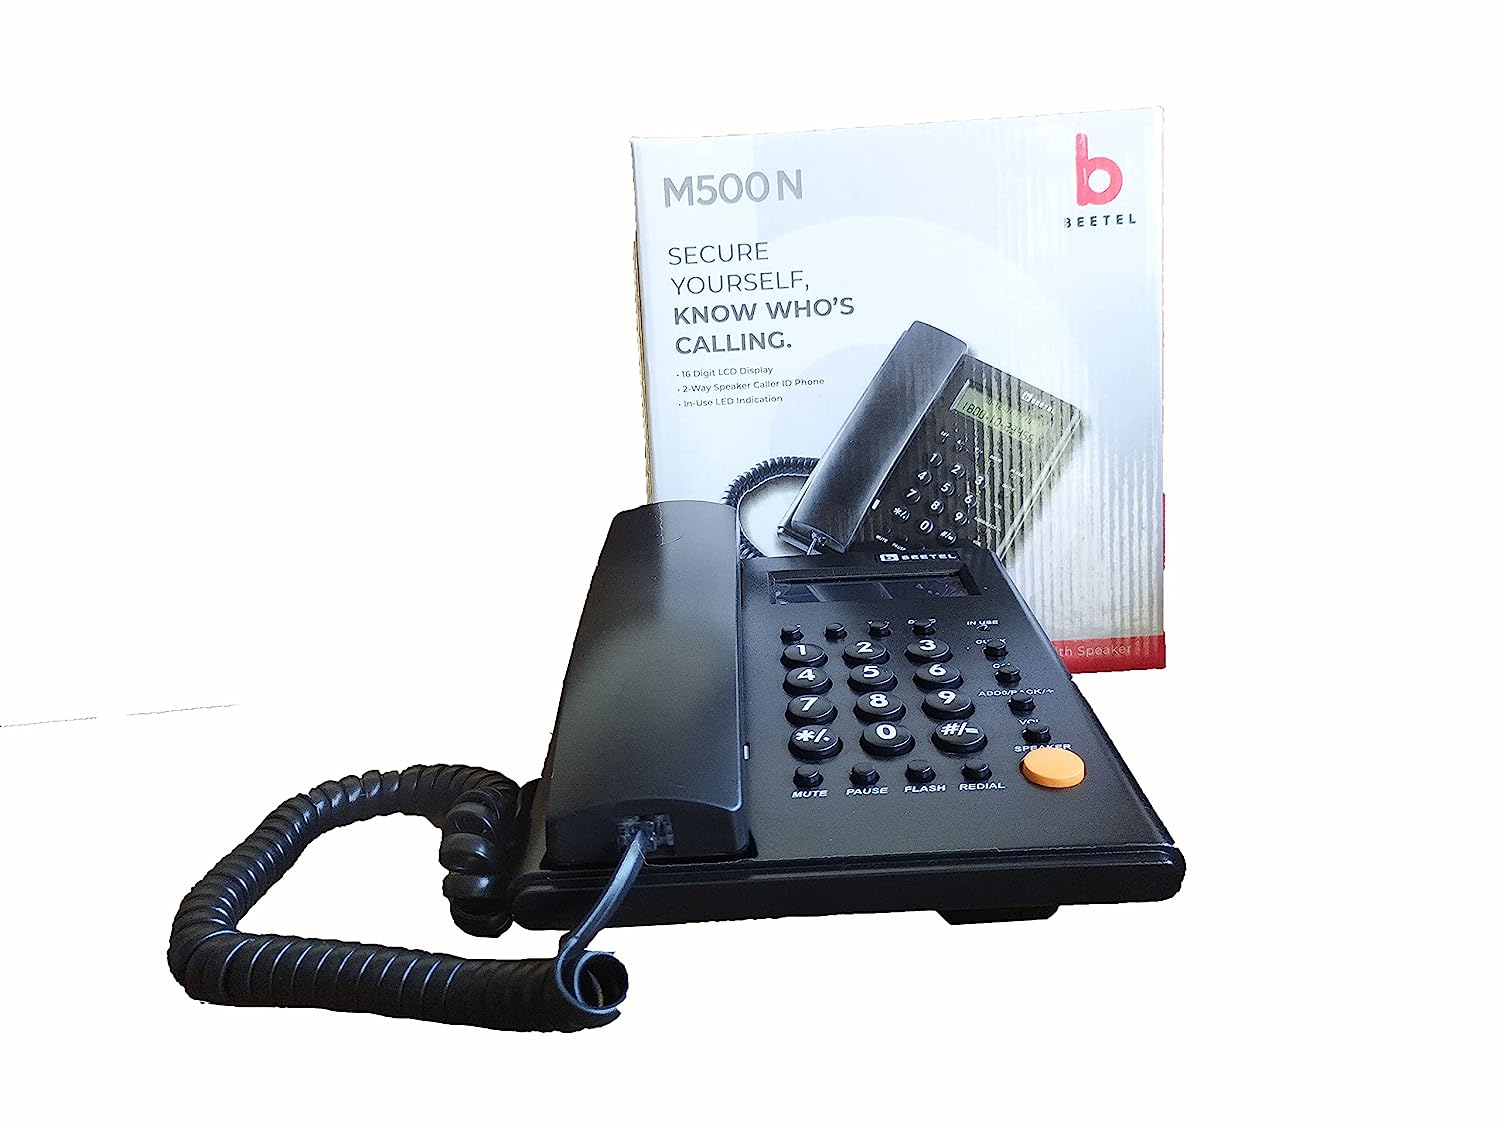 Beetel M500N Caller ID Landline Phone with Speaker Phone